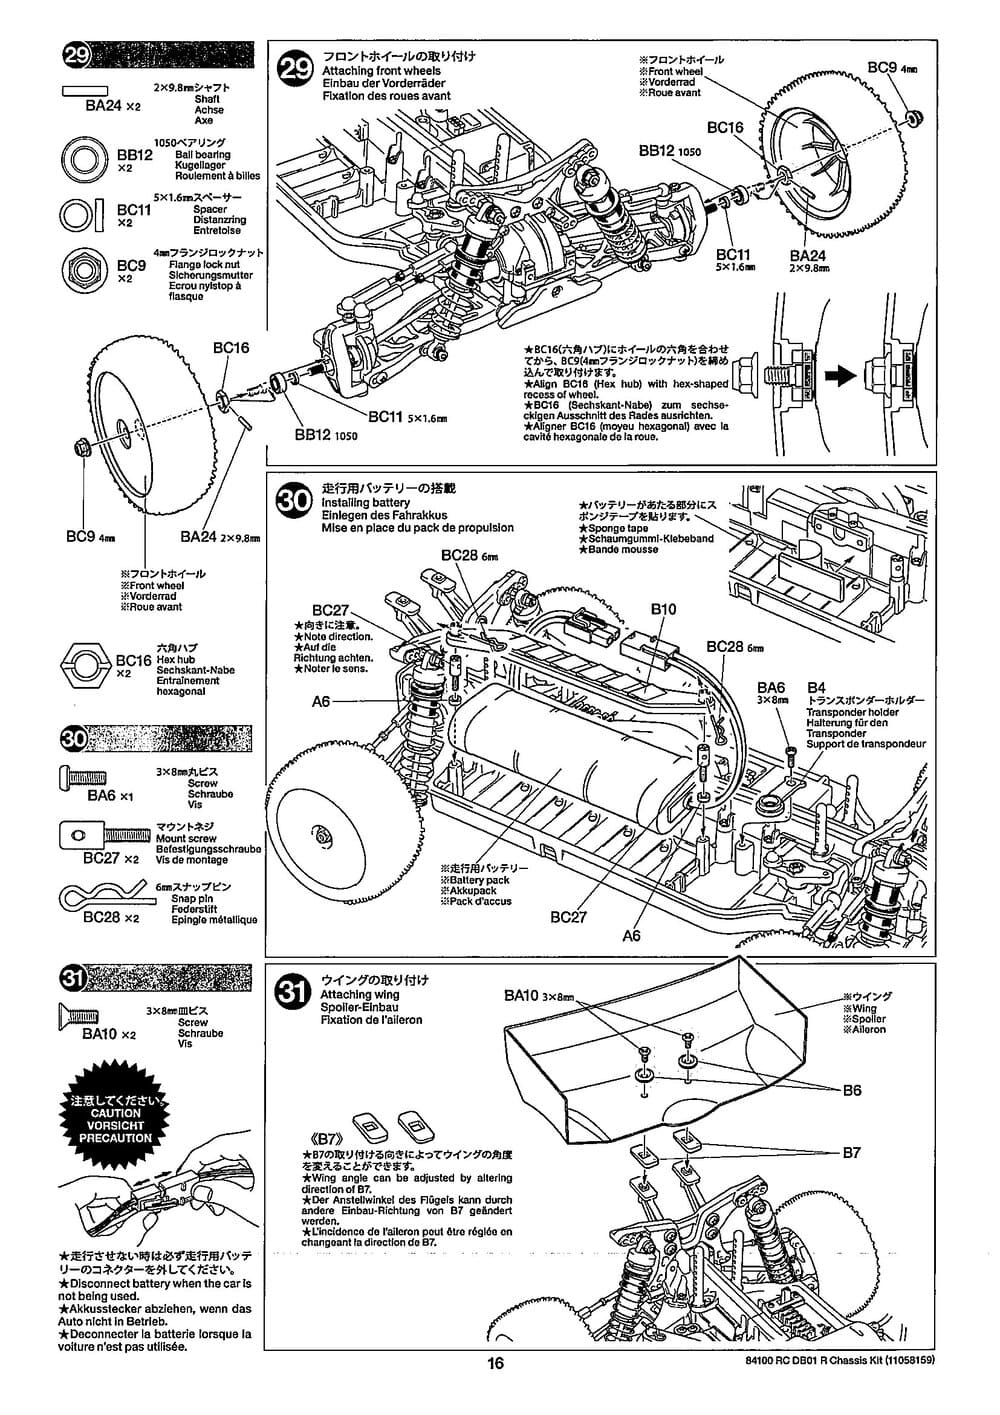 Tamiya - DB-01R Chassis - Manual - Page 16